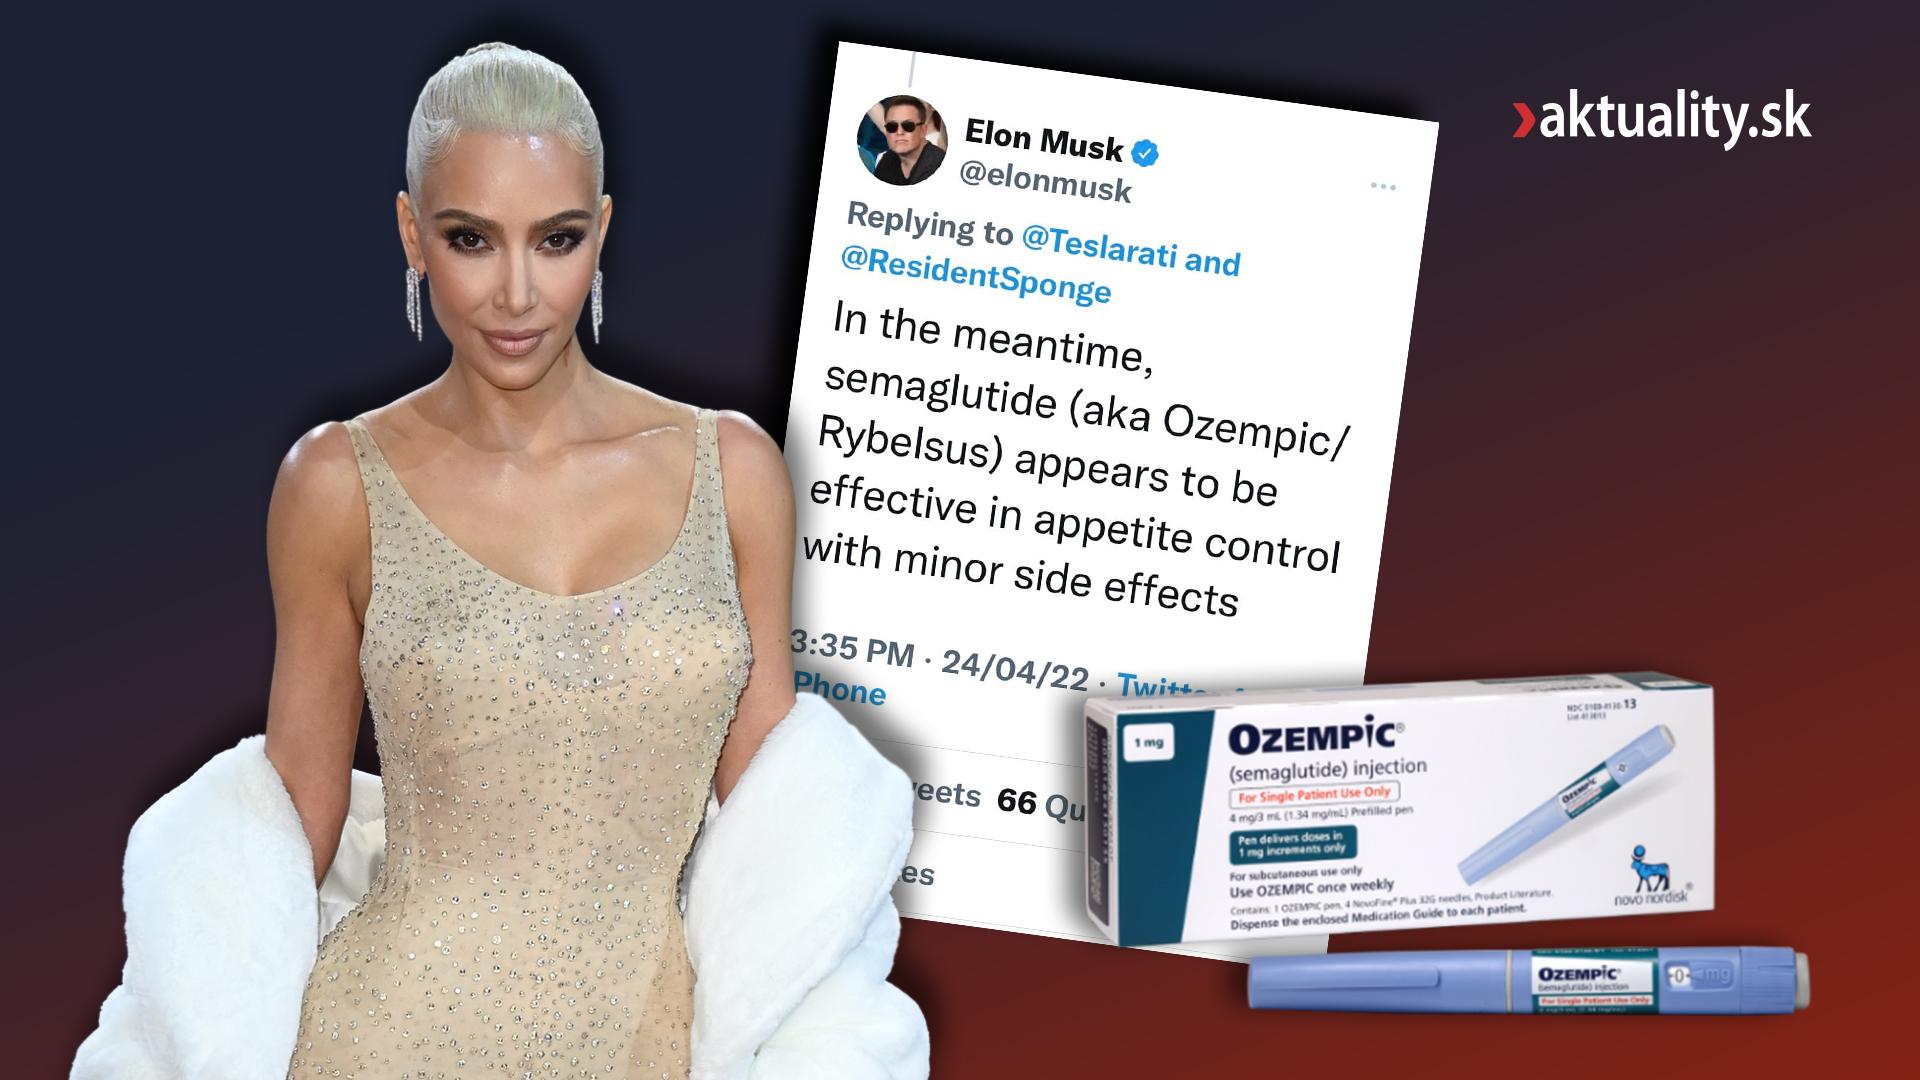 S užívaním liekov s obsahom semaglutidu sú spájané mnohé slávne osobnosti vrátane Kim Kardashian či Elona Muska.